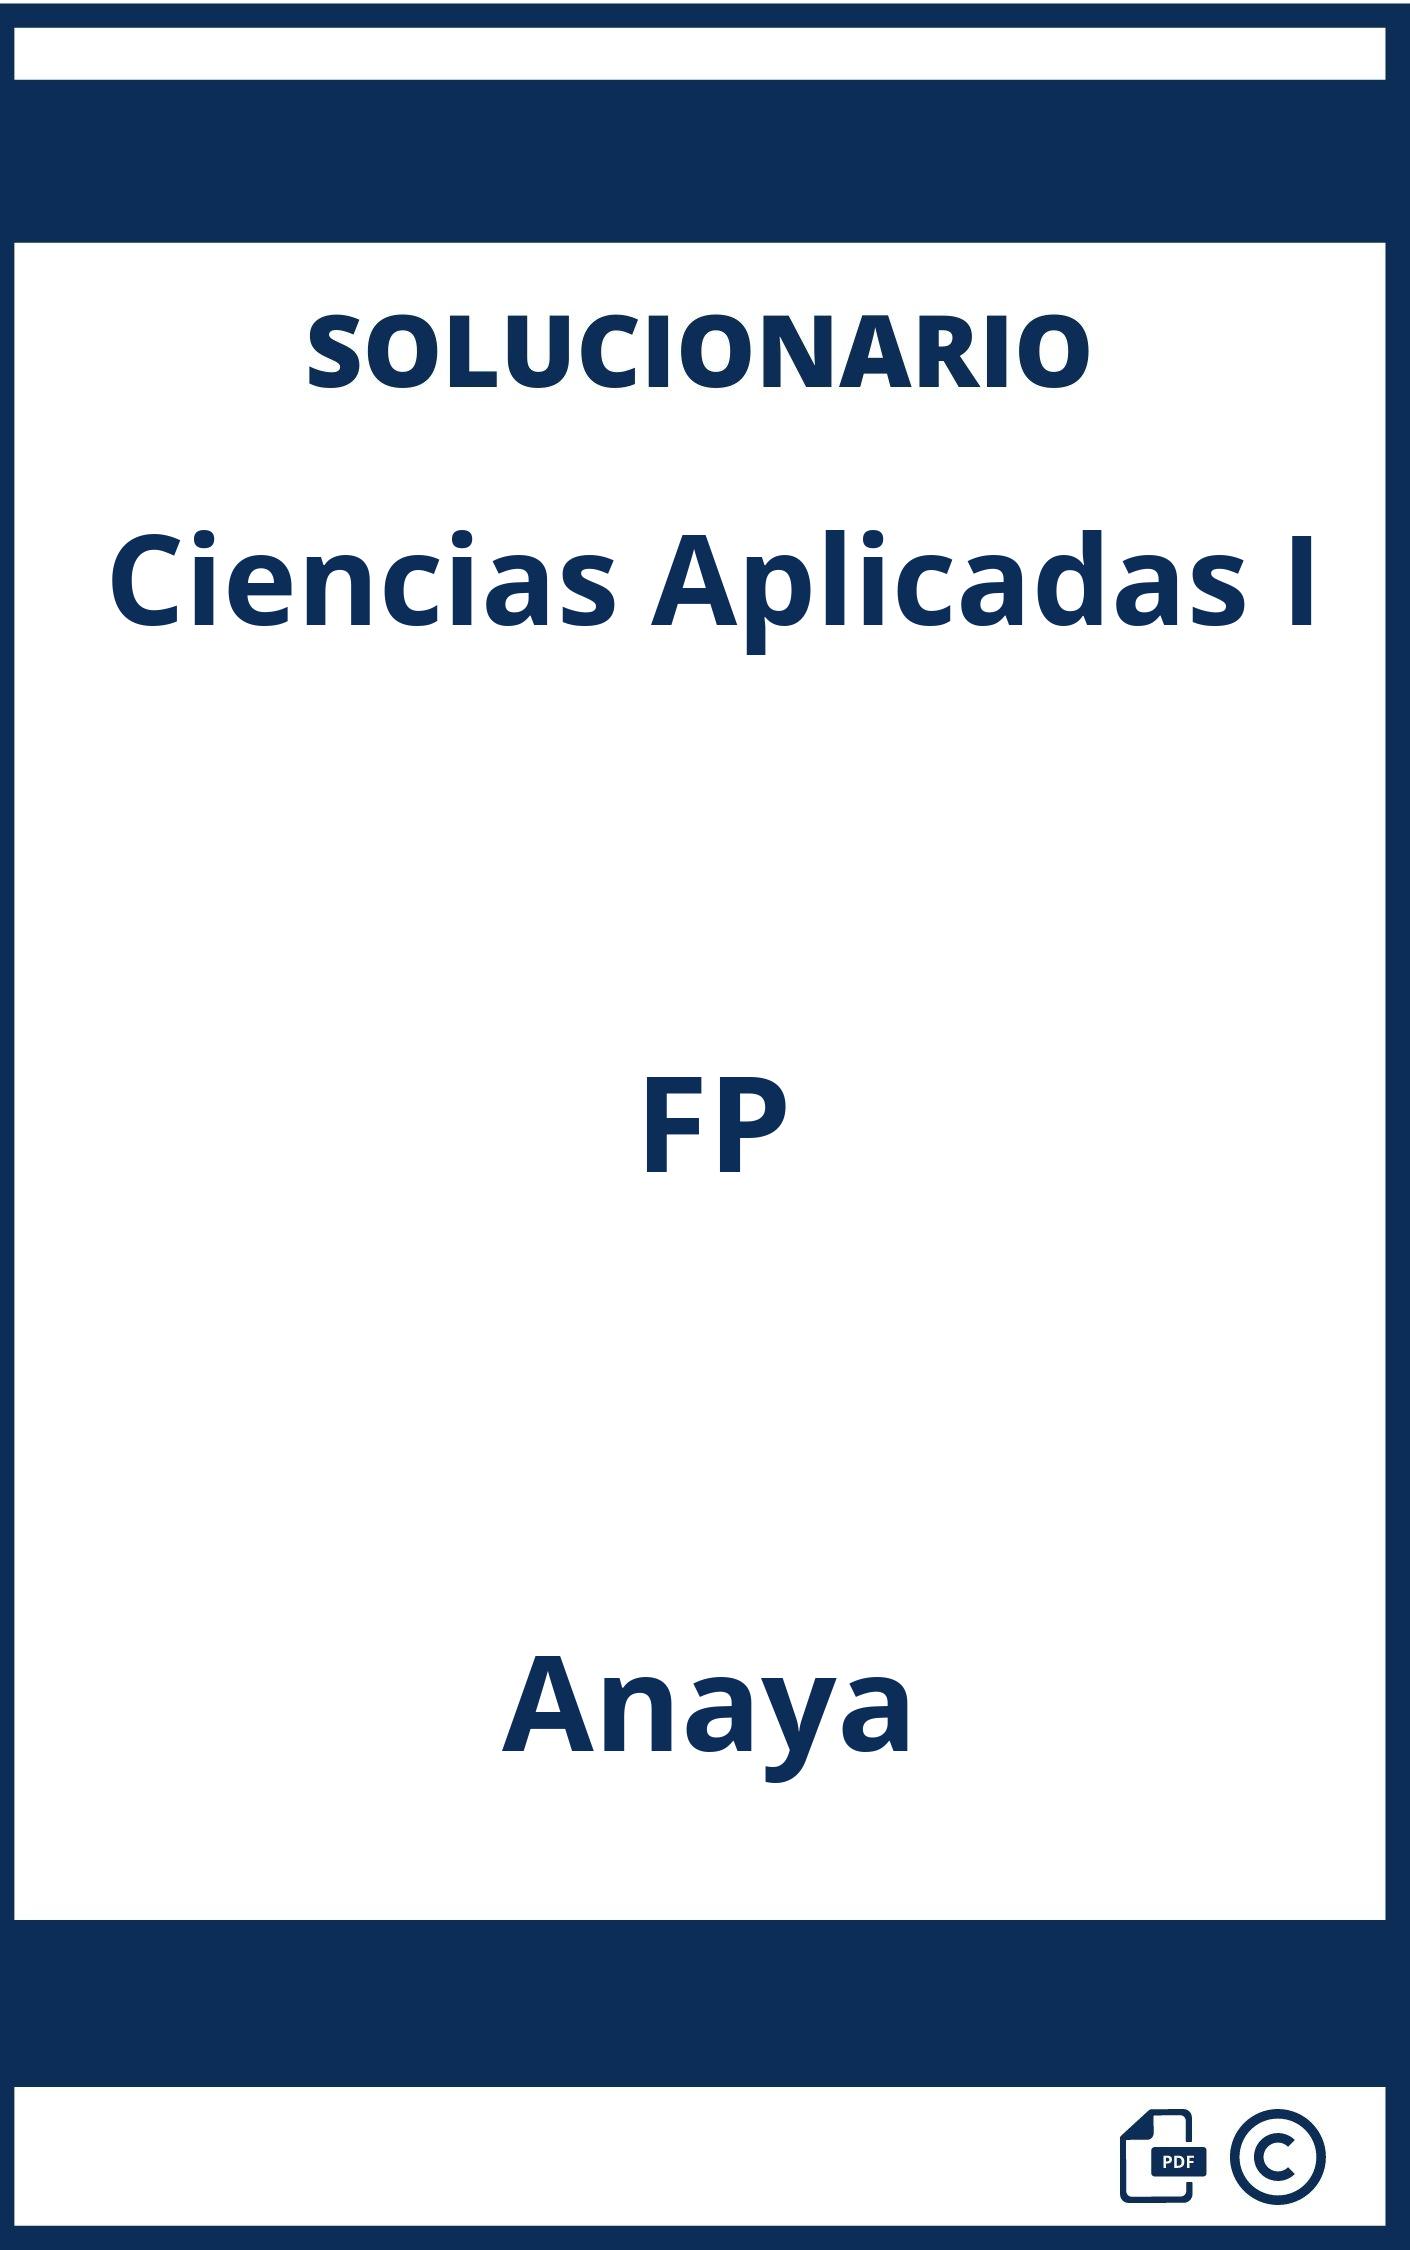 Solucionario Ciencias Aplicadas I FP Anaya